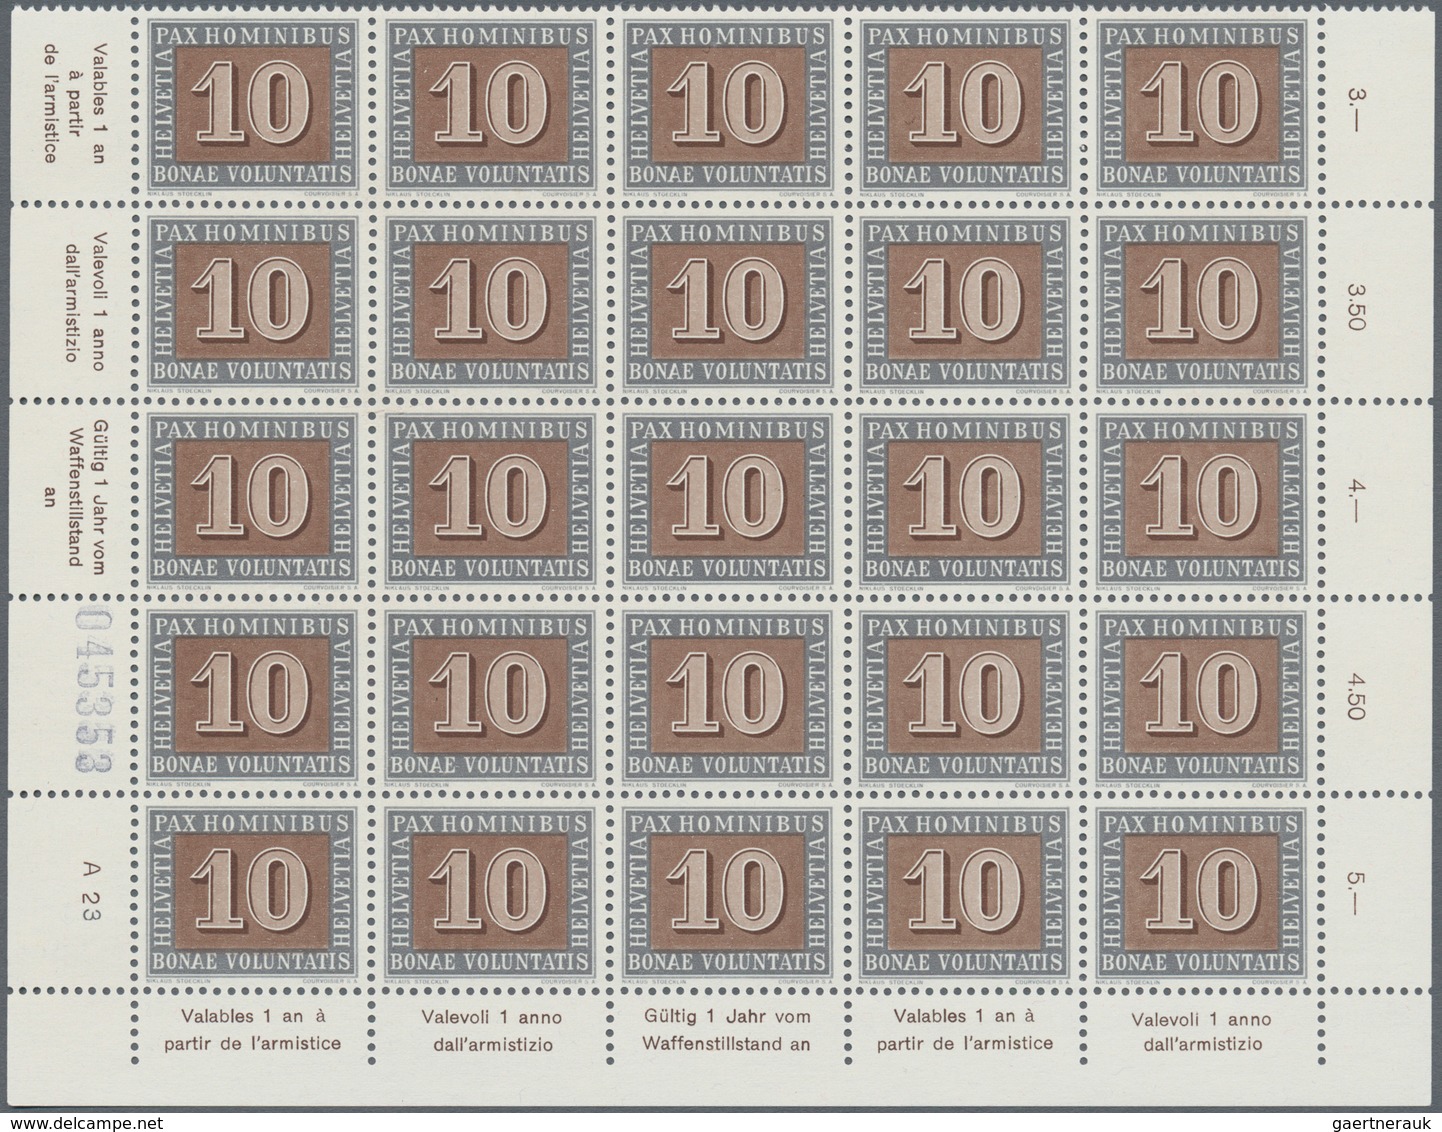 01627 Schweiz: 1945 PAX: Kompletter Satz in Bogenteilen zu 25 Marken (5x5), teils mit Bogenrändern, tadell